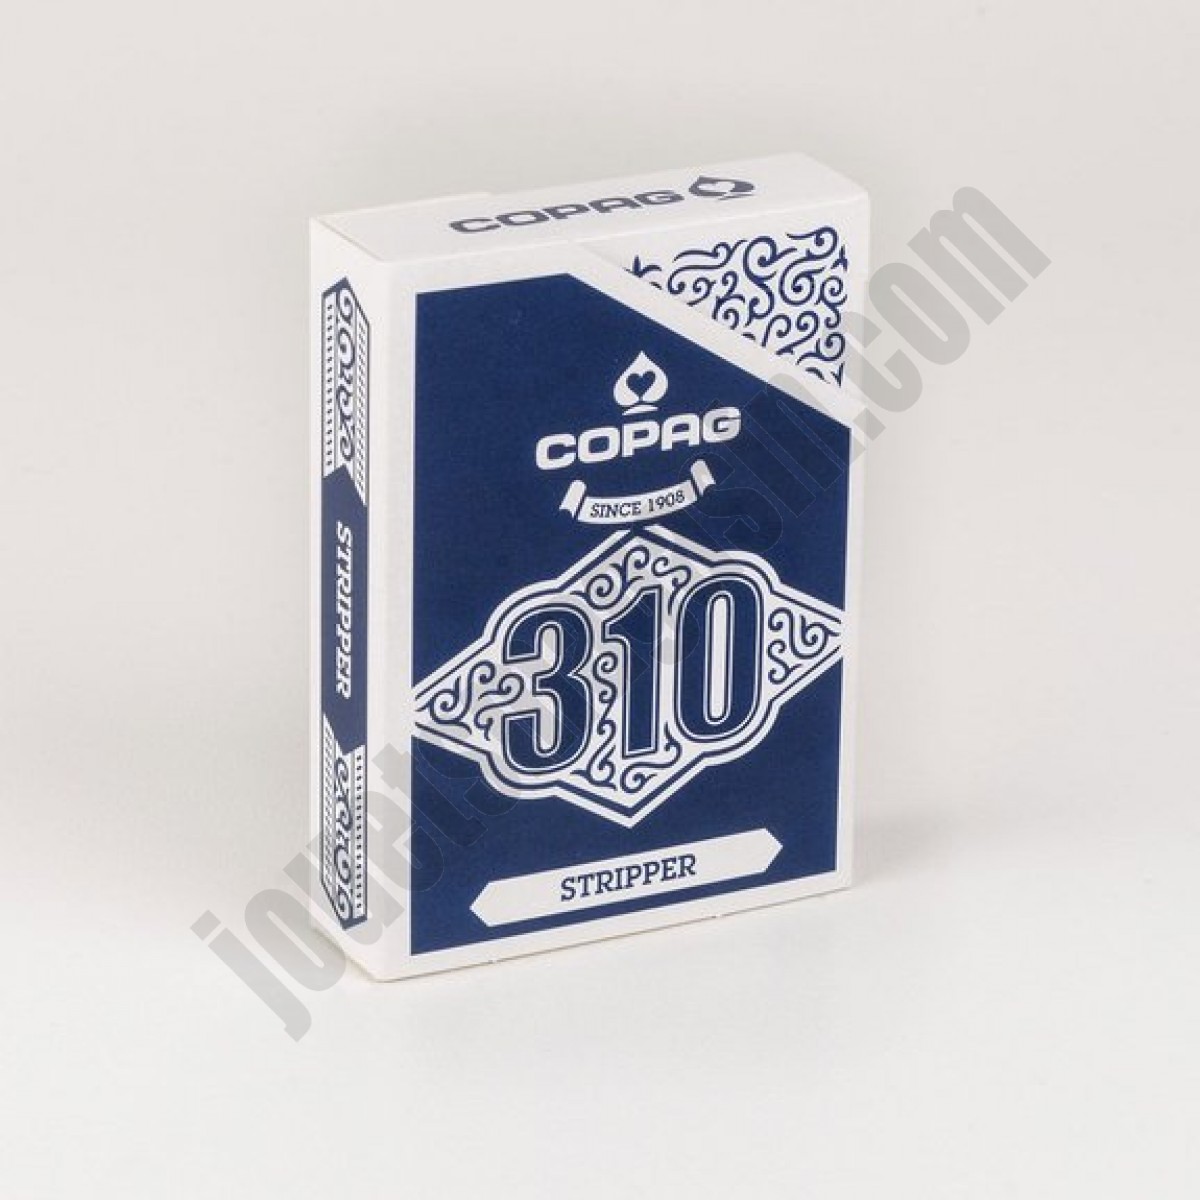 France Cartes - Copag 310 - Jeu de cartes truqué Stripper En promotion - France Cartes - Copag 310 - Jeu de cartes truqué Stripper En promotion